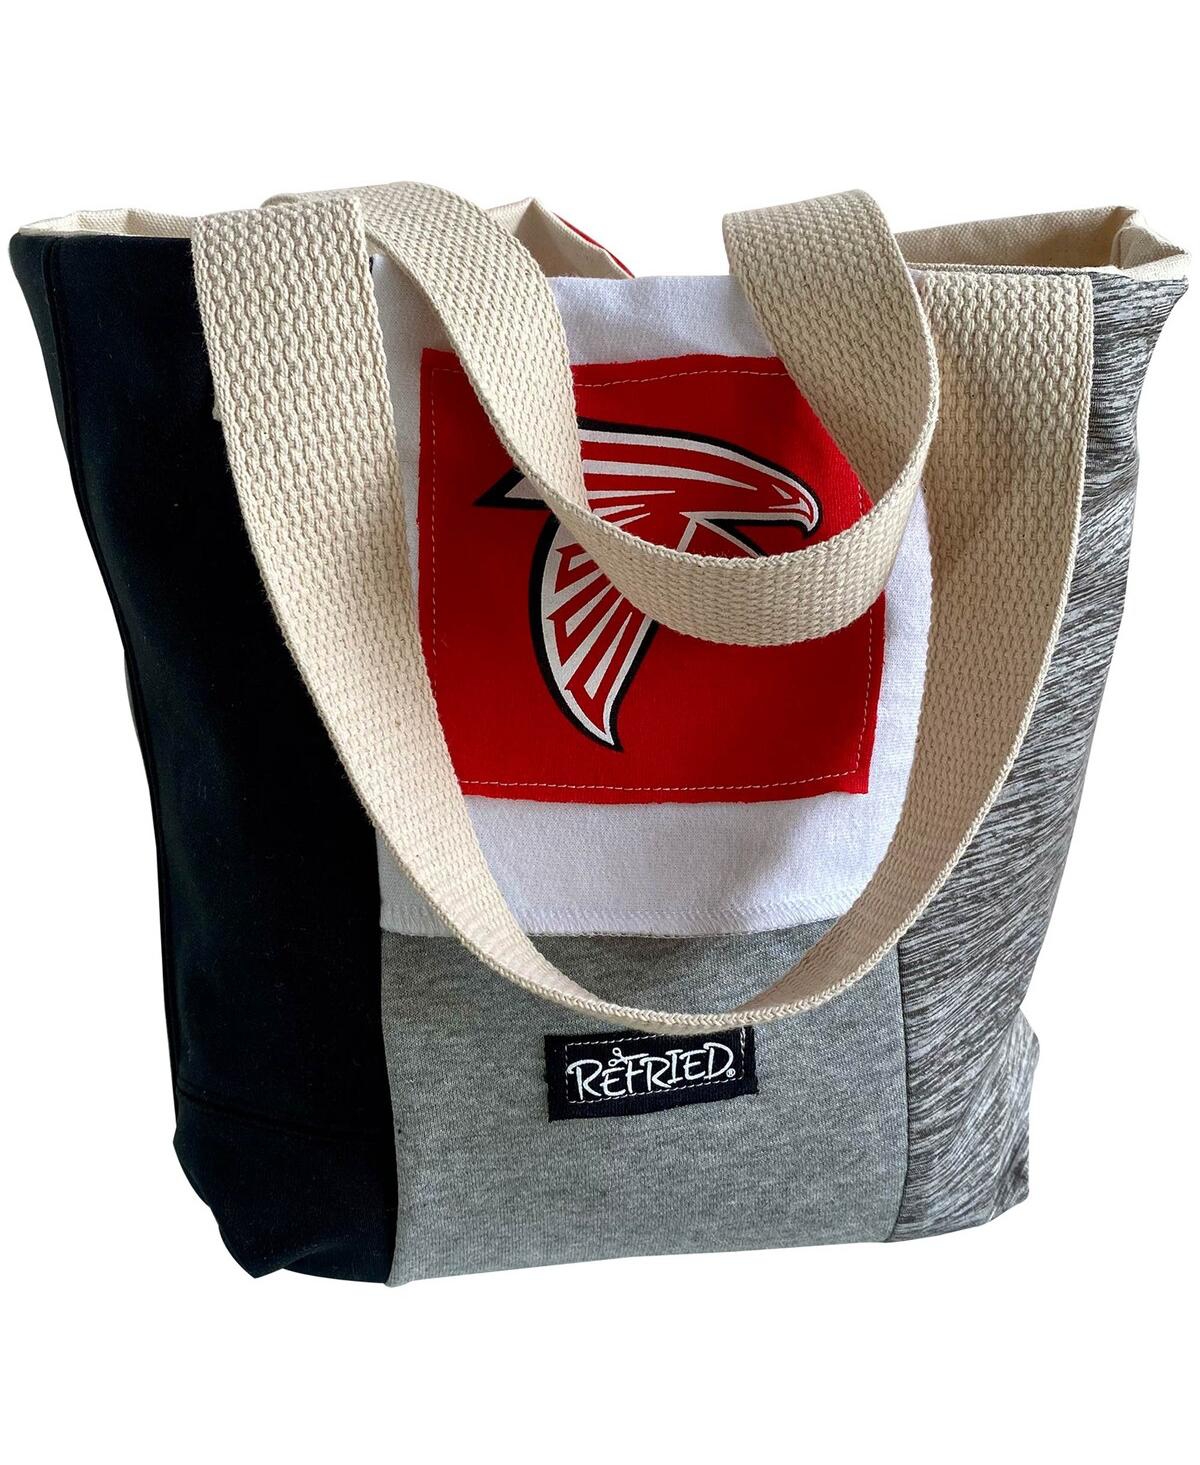 Women's Refried Apparel Atlanta Falcons Tote Bag - Multi